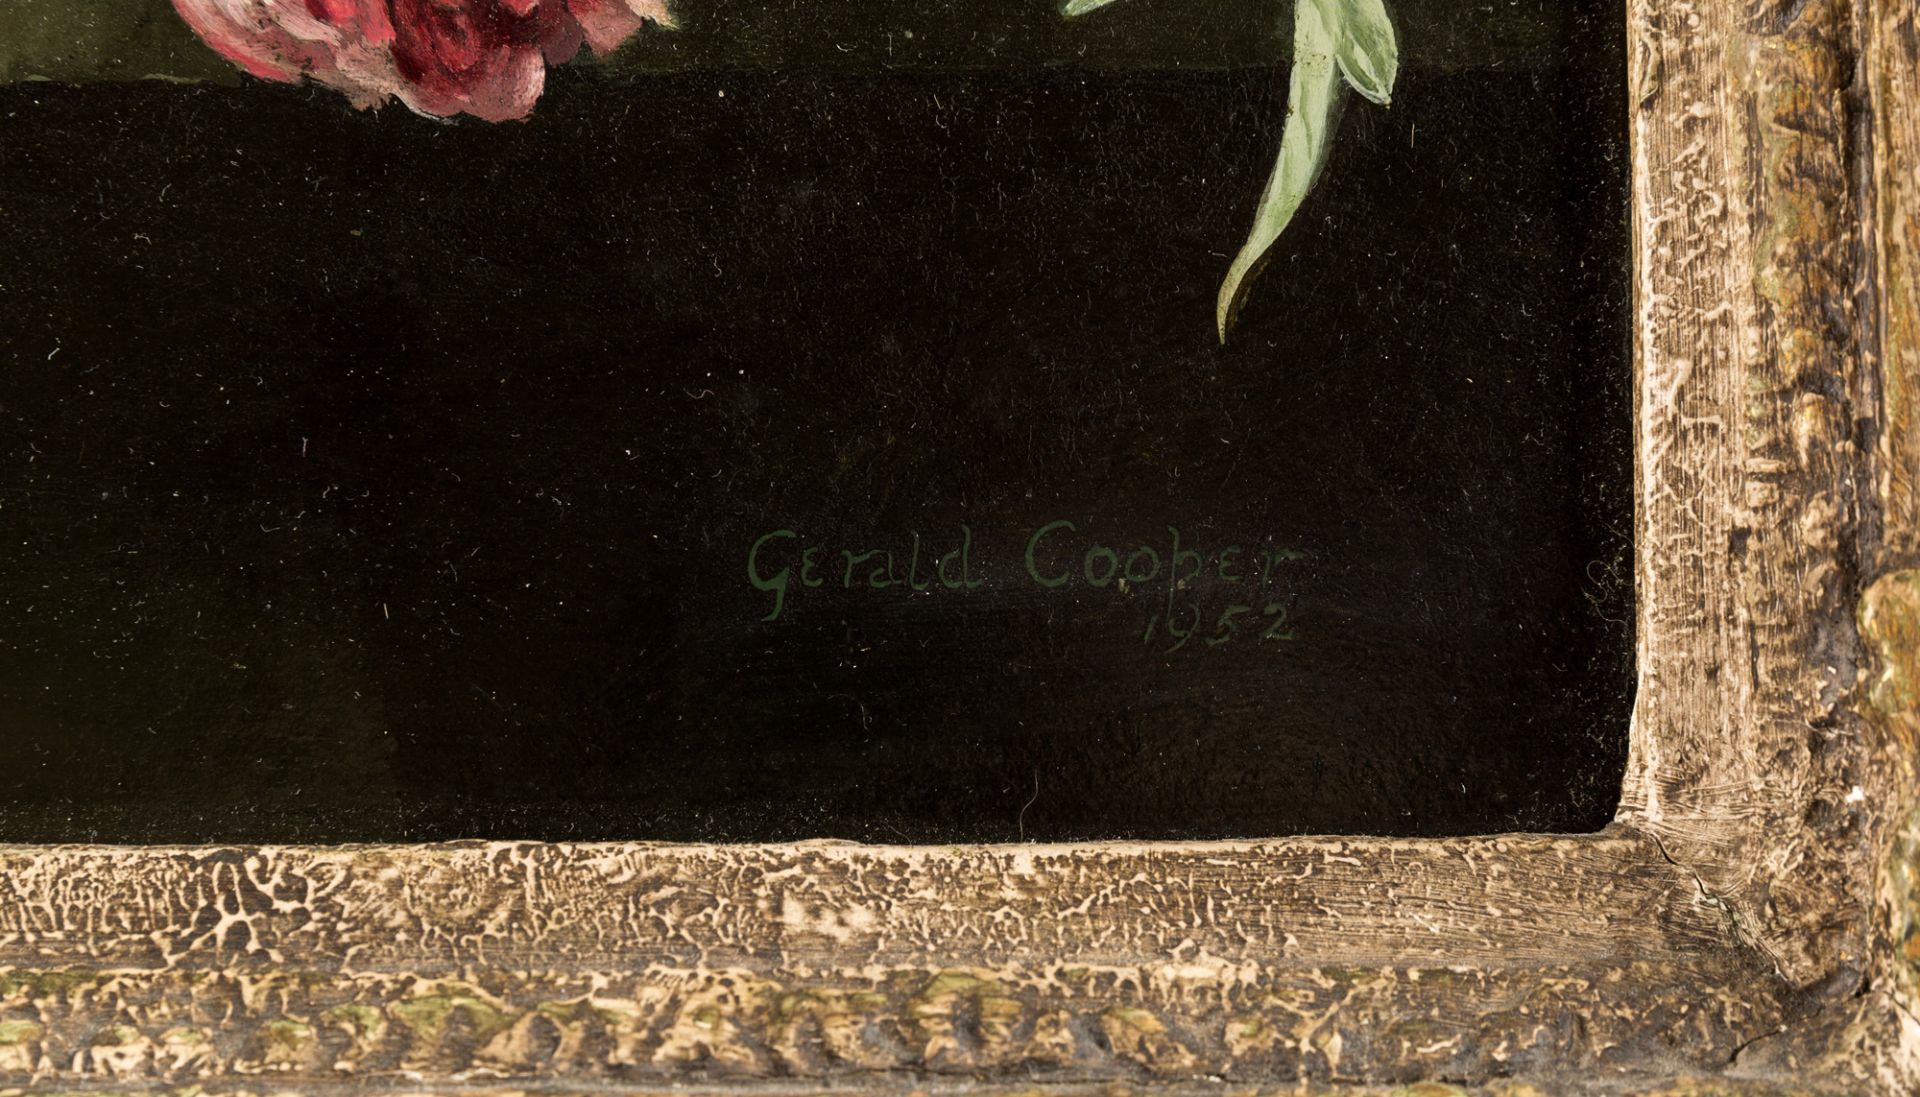 GERALD A. COOPER (BRITISH 1898-1975) - Bild 3 aus 3